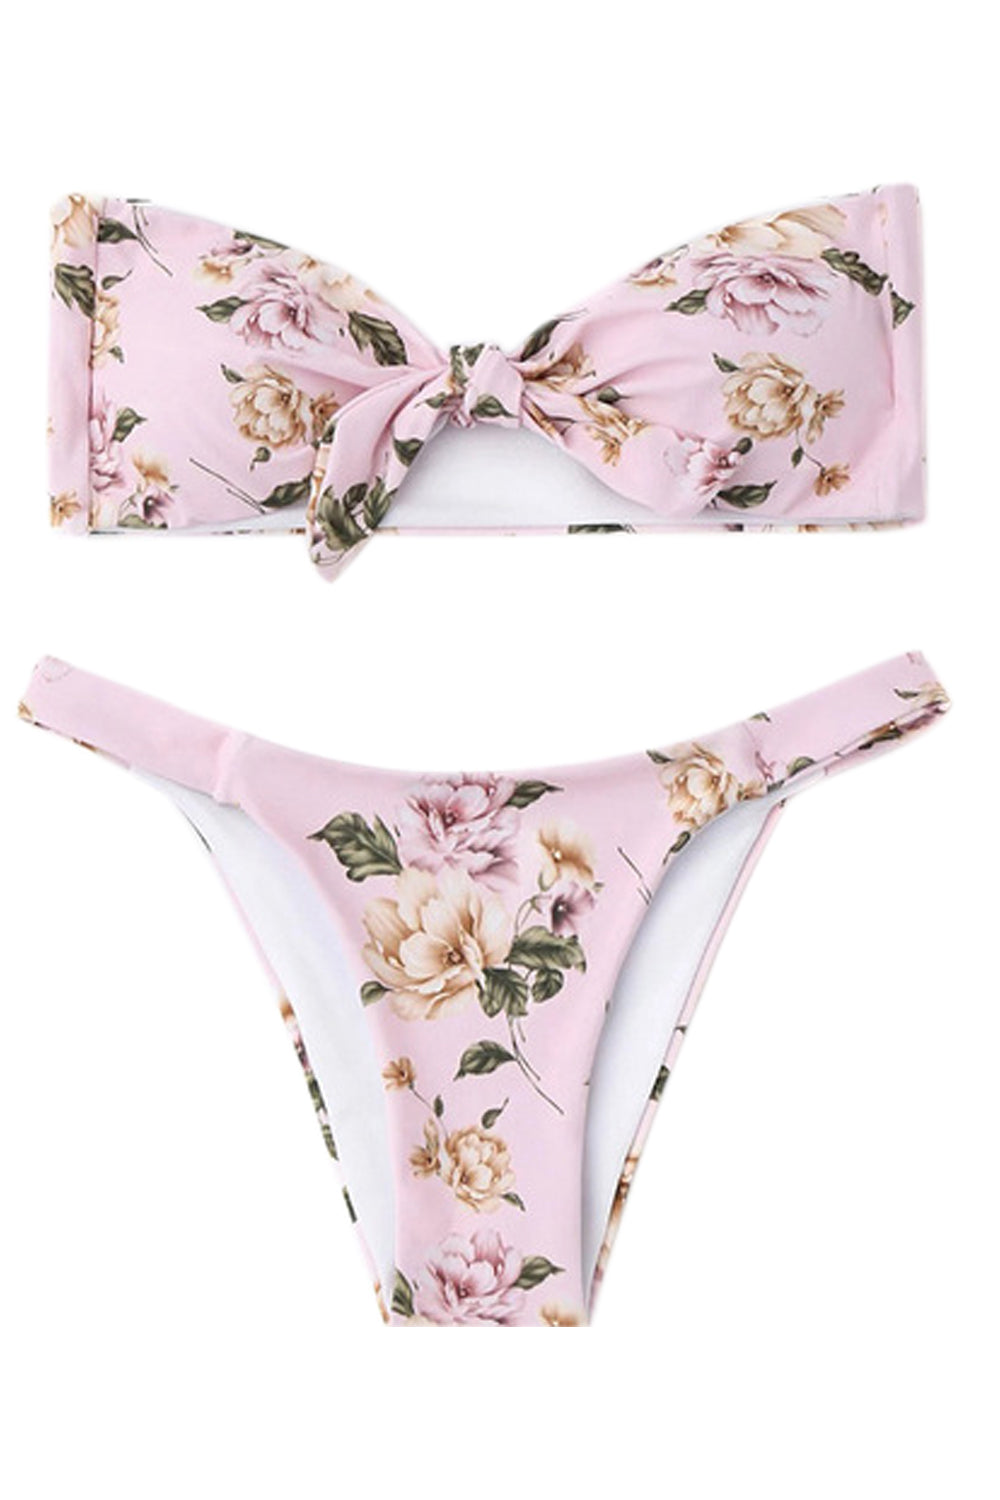 Iyasson Charming Floral printing Bikini Set